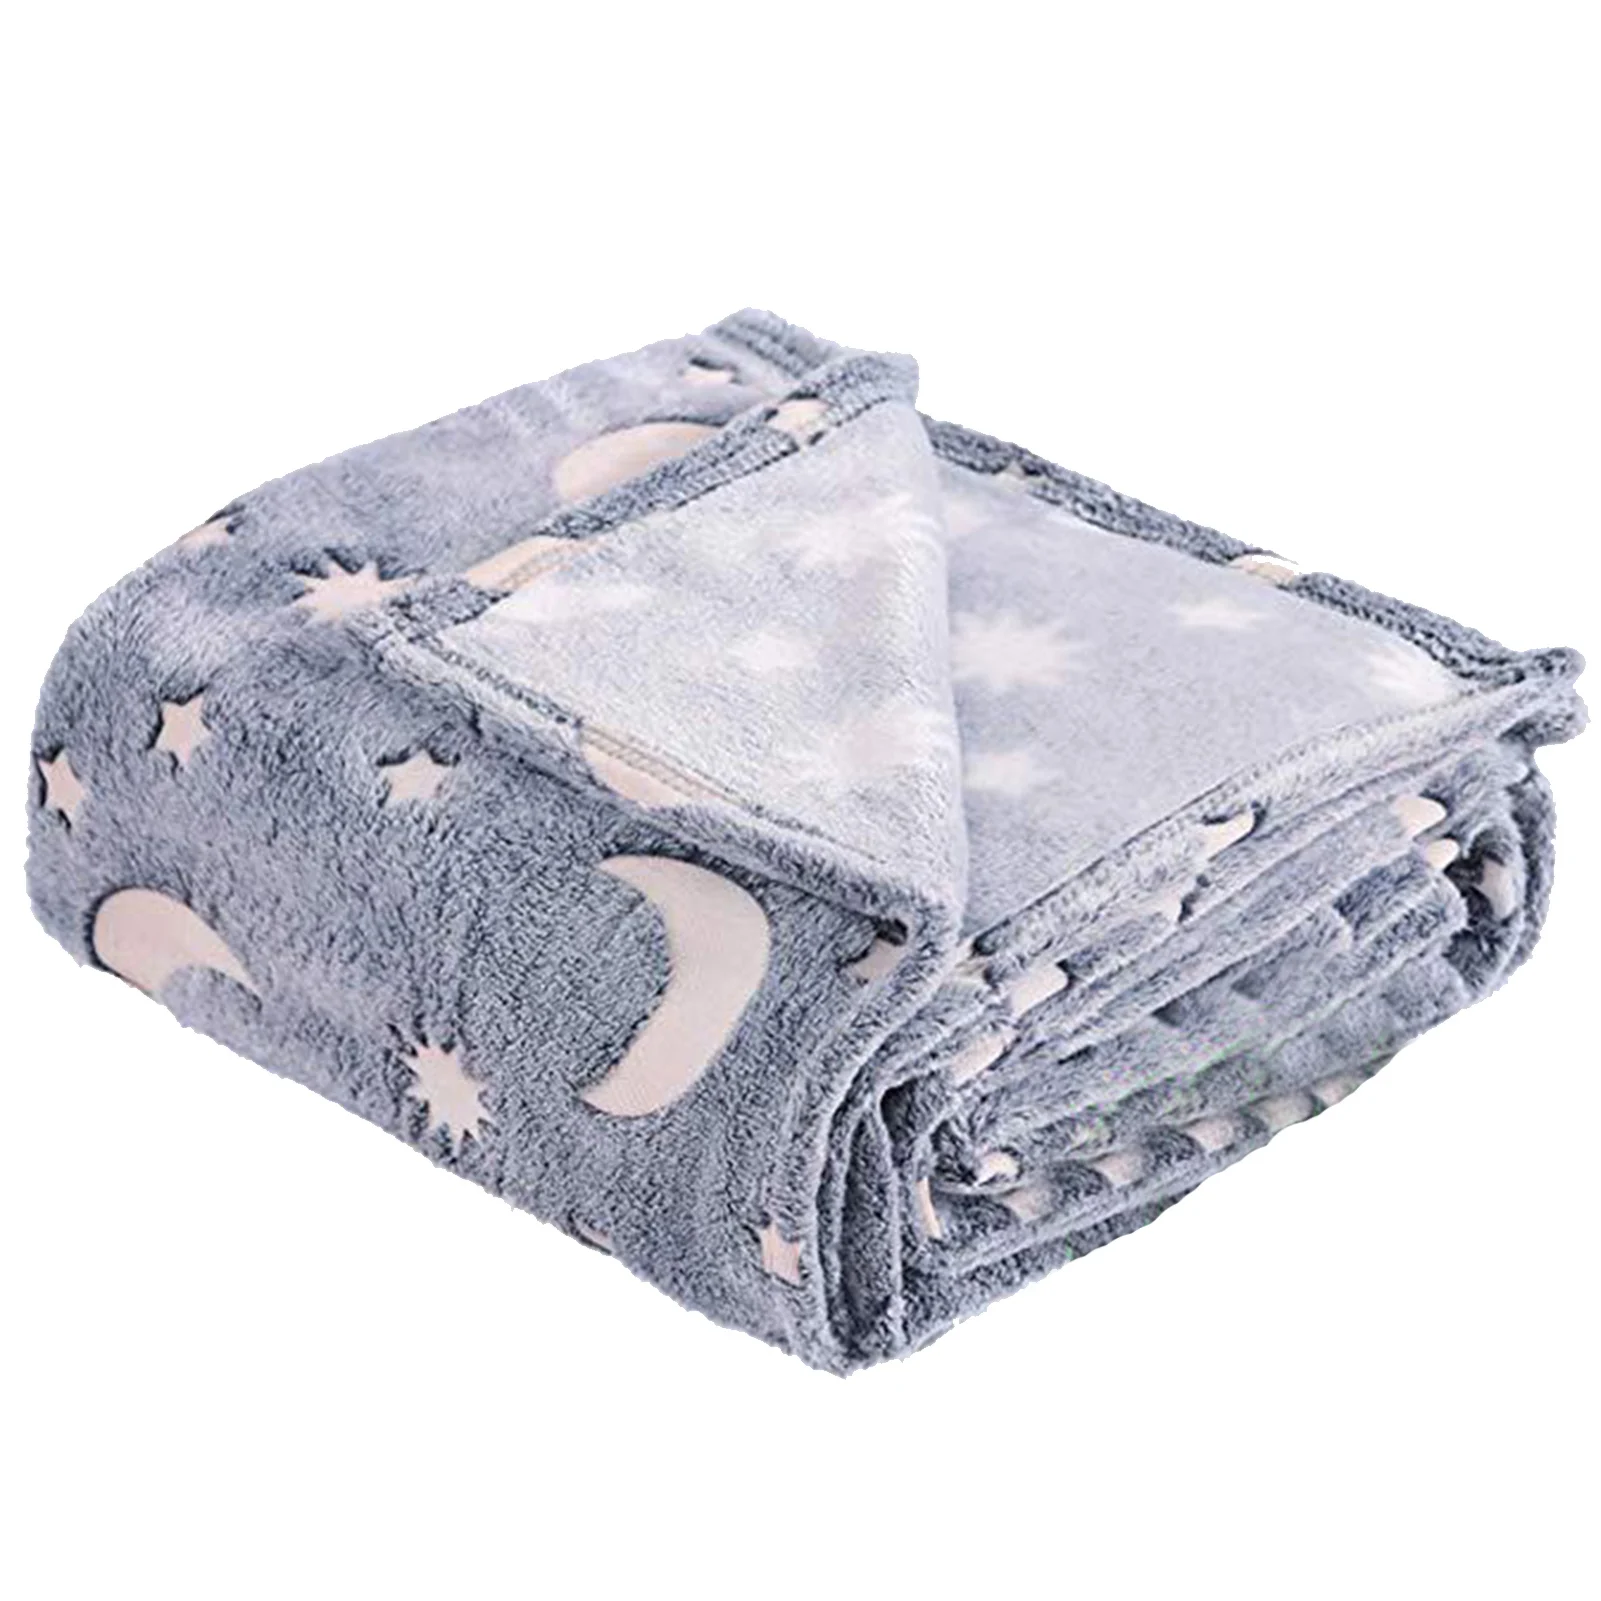 

Одеяло в виде полумесяца детское одеяло легкое плюшевое теплое удобное Фланелевое тонкое одеяло s мягкое индивидуальное